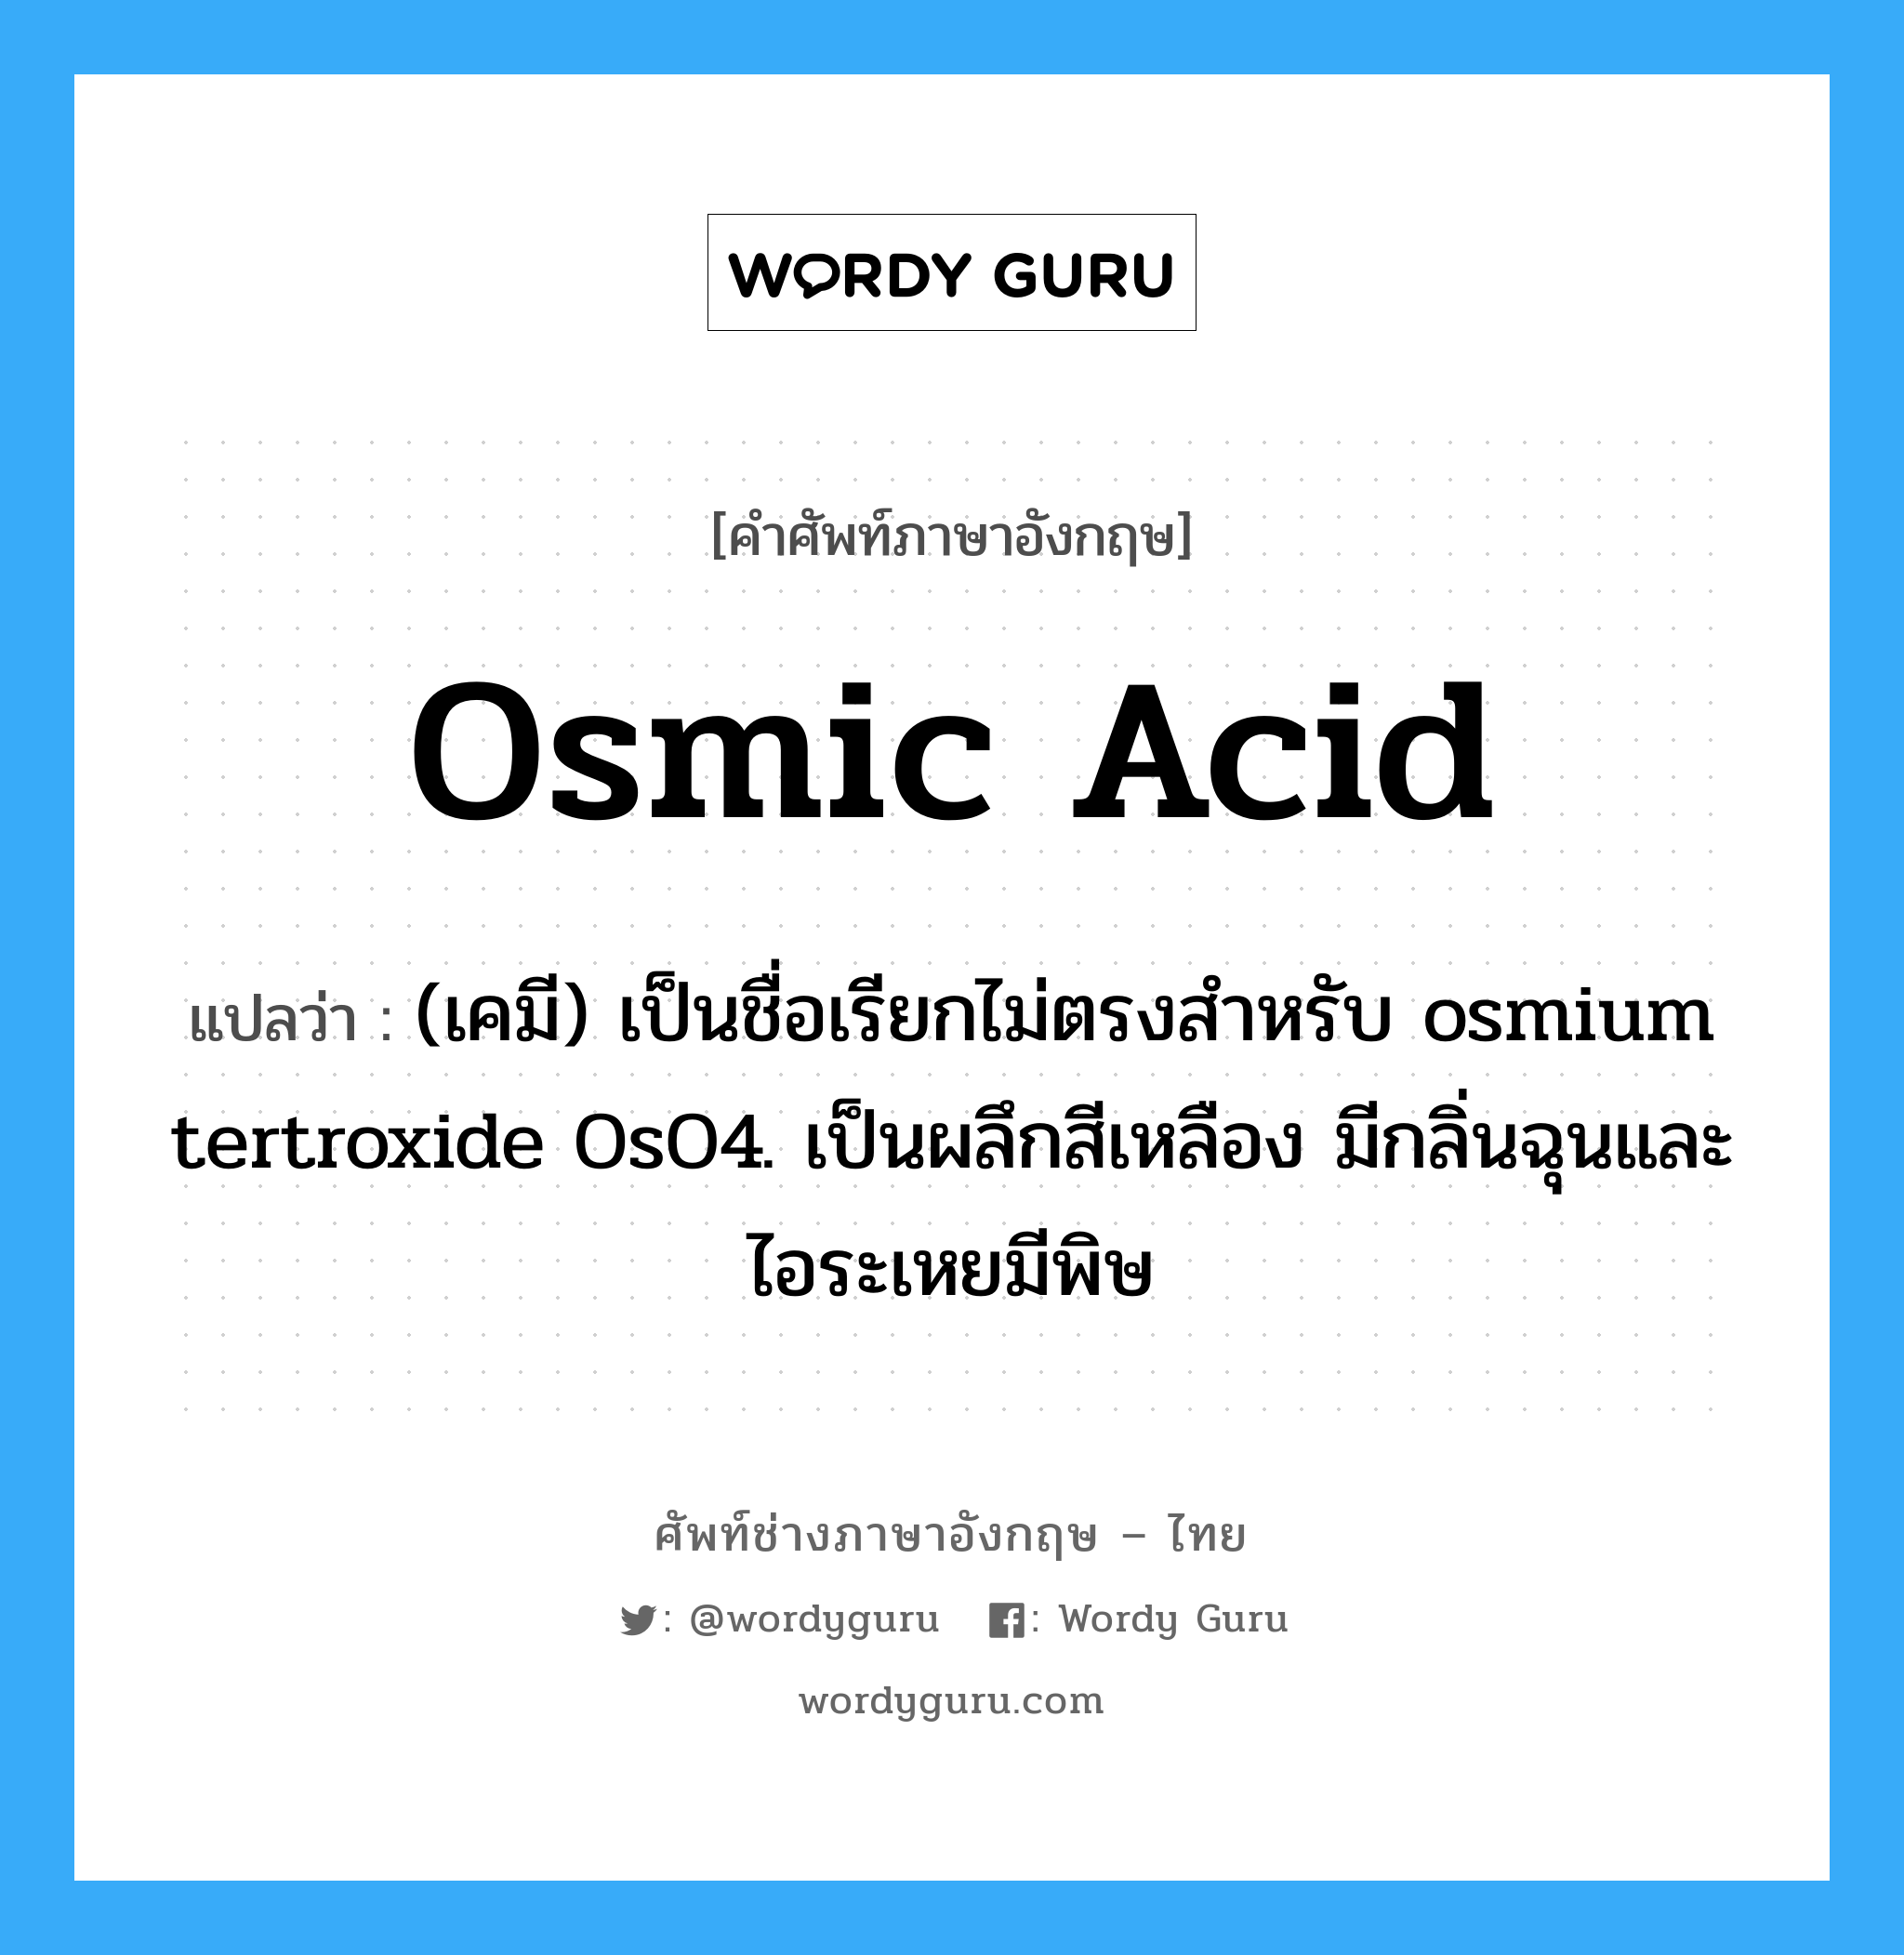 osmic acid แปลว่า?, คำศัพท์ช่างภาษาอังกฤษ - ไทย osmic acid คำศัพท์ภาษาอังกฤษ osmic acid แปลว่า (เคมี) เป็นชื่อเรียกไม่ตรงสำหรับ osmium tertroxide OsO4. เป็นผลึกสีเหลือง มีกลิ่นฉุนและไอระเหยมีพิษ